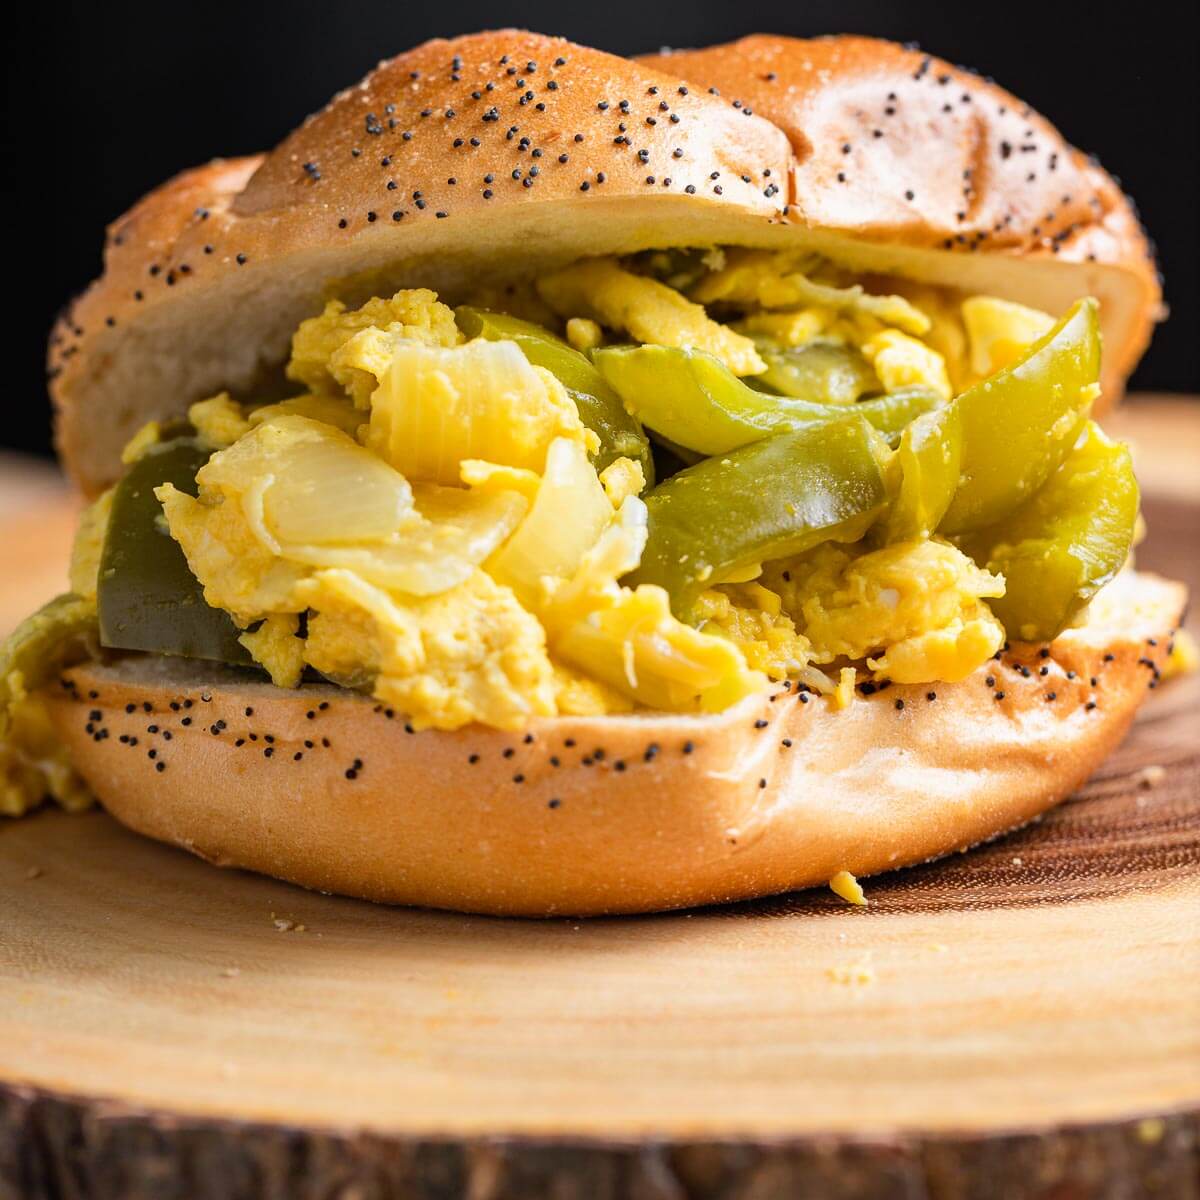 https://www.sipandfeast.com/wp-content/uploads/2021/08/pepper-egg-sandwich-snippet.jpg